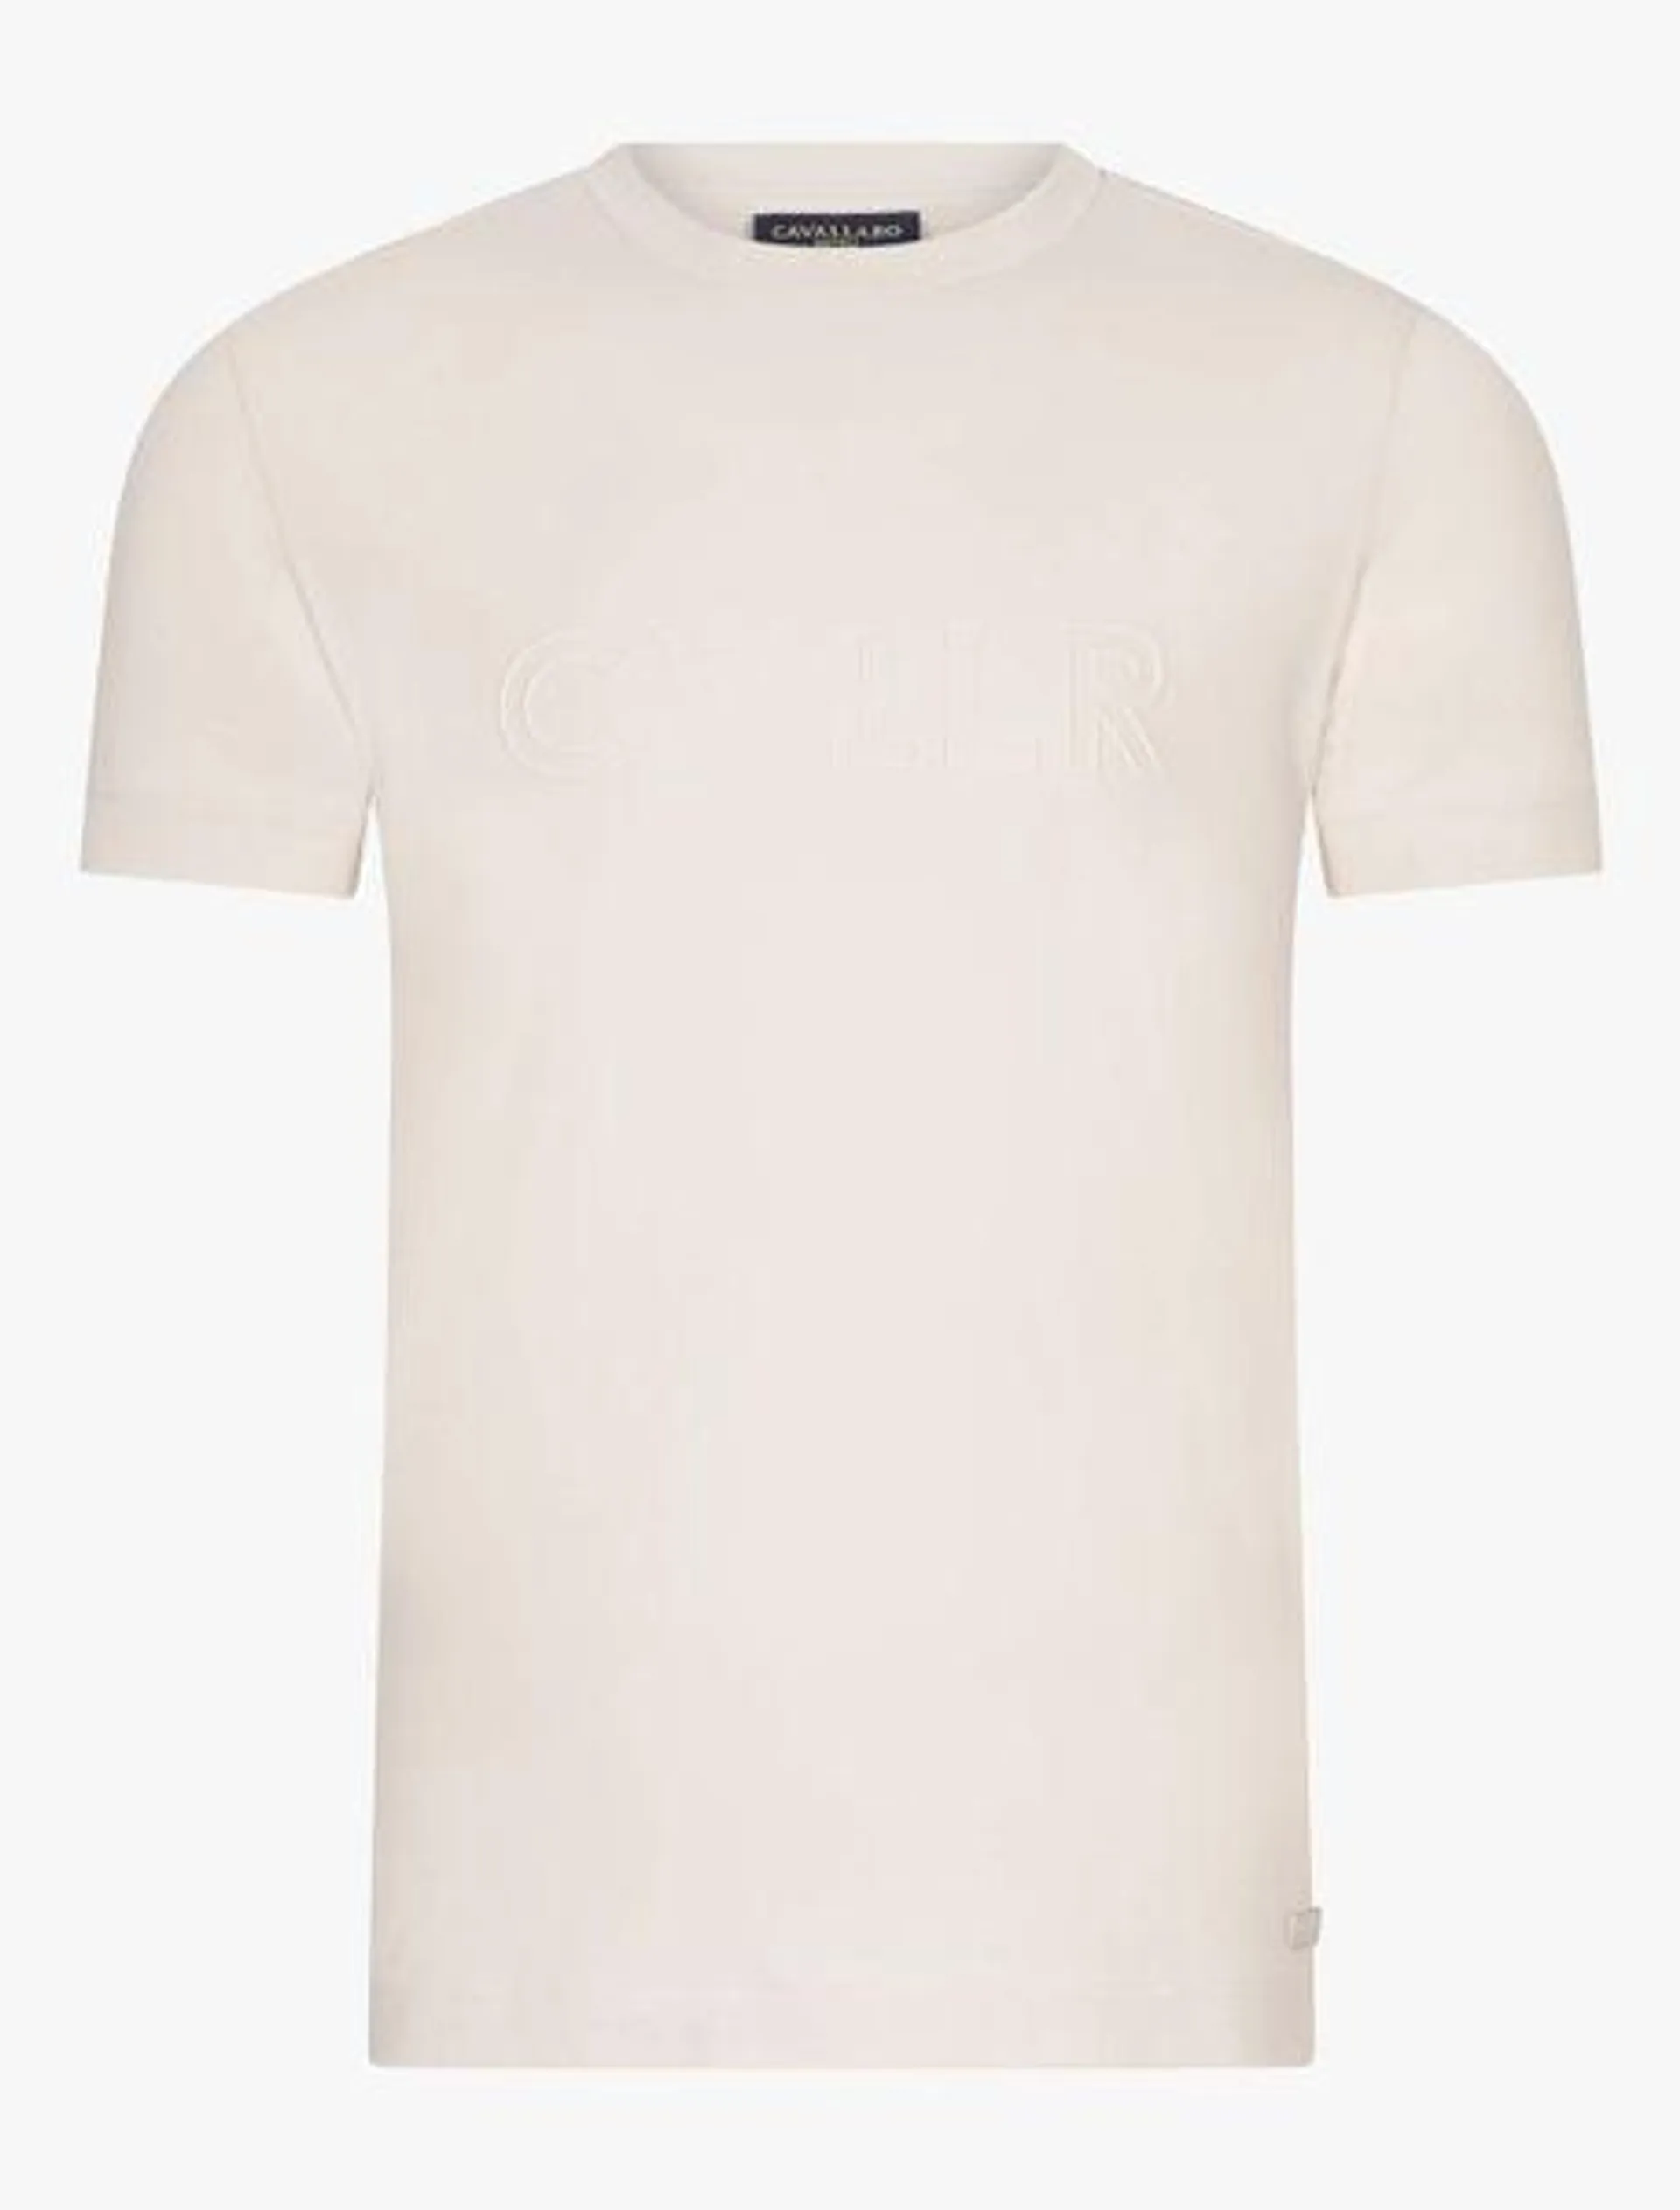 Brassio T-shirt Kit